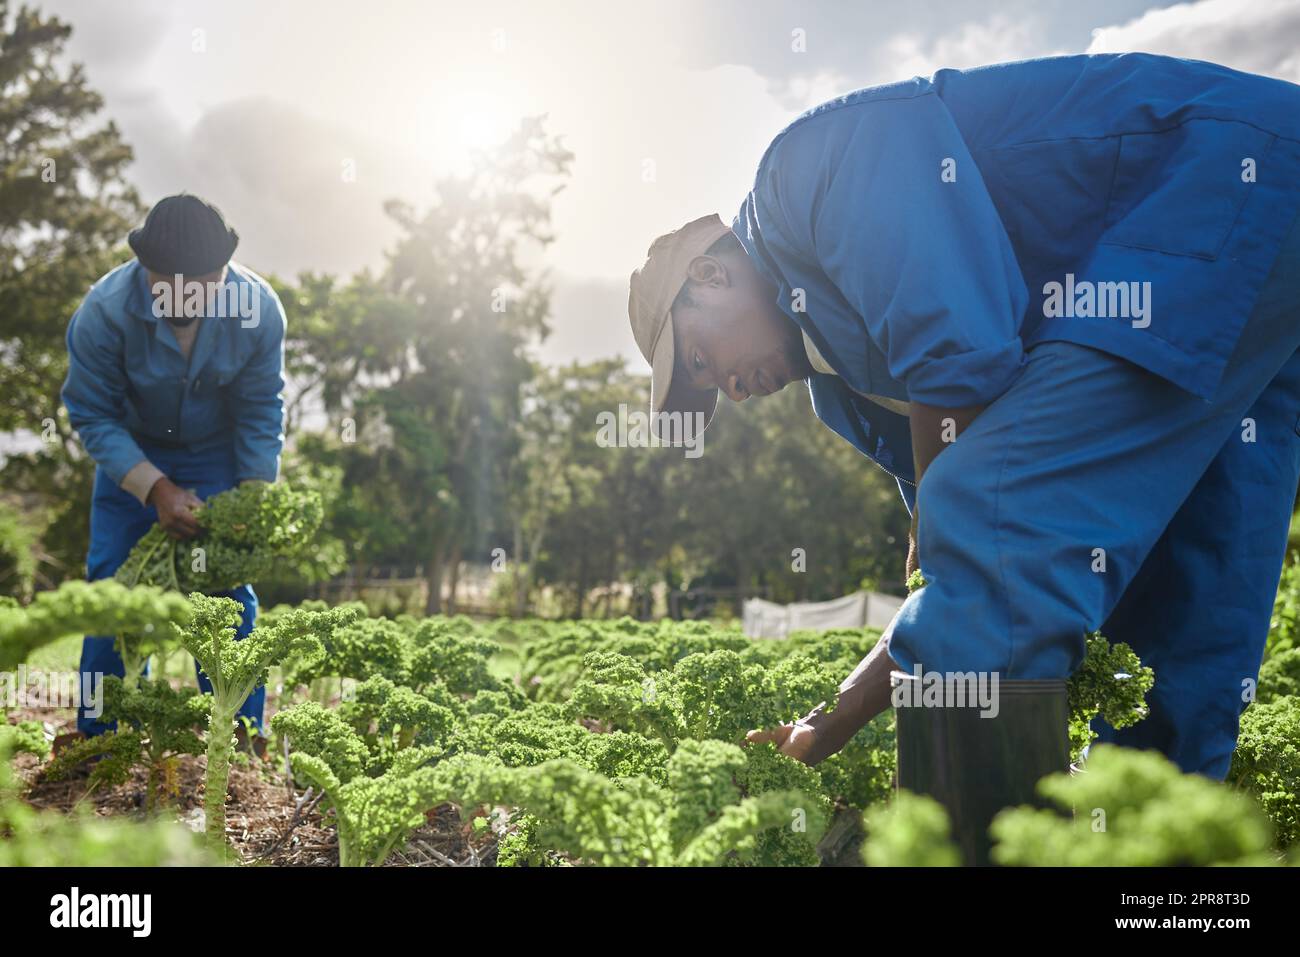 Es ist einfach, wenn Sie zusammen arbeiten. Zwei männliche Landarbeiter, die sich um die Ernte. Stockfoto